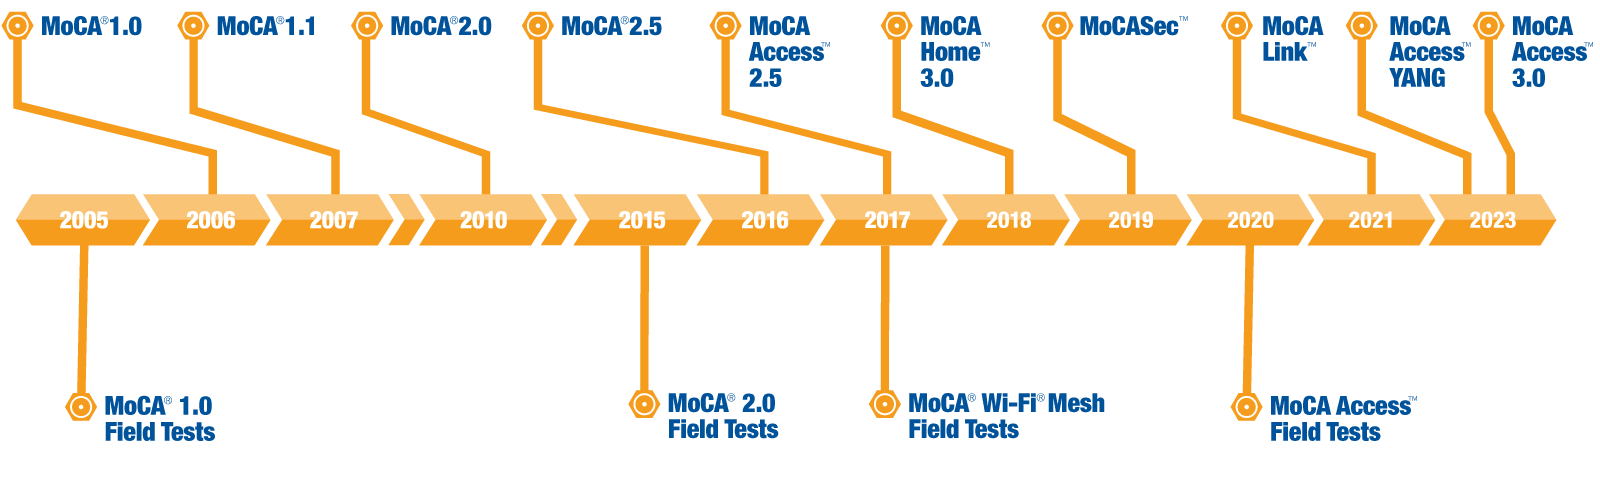 MoCA roadmap